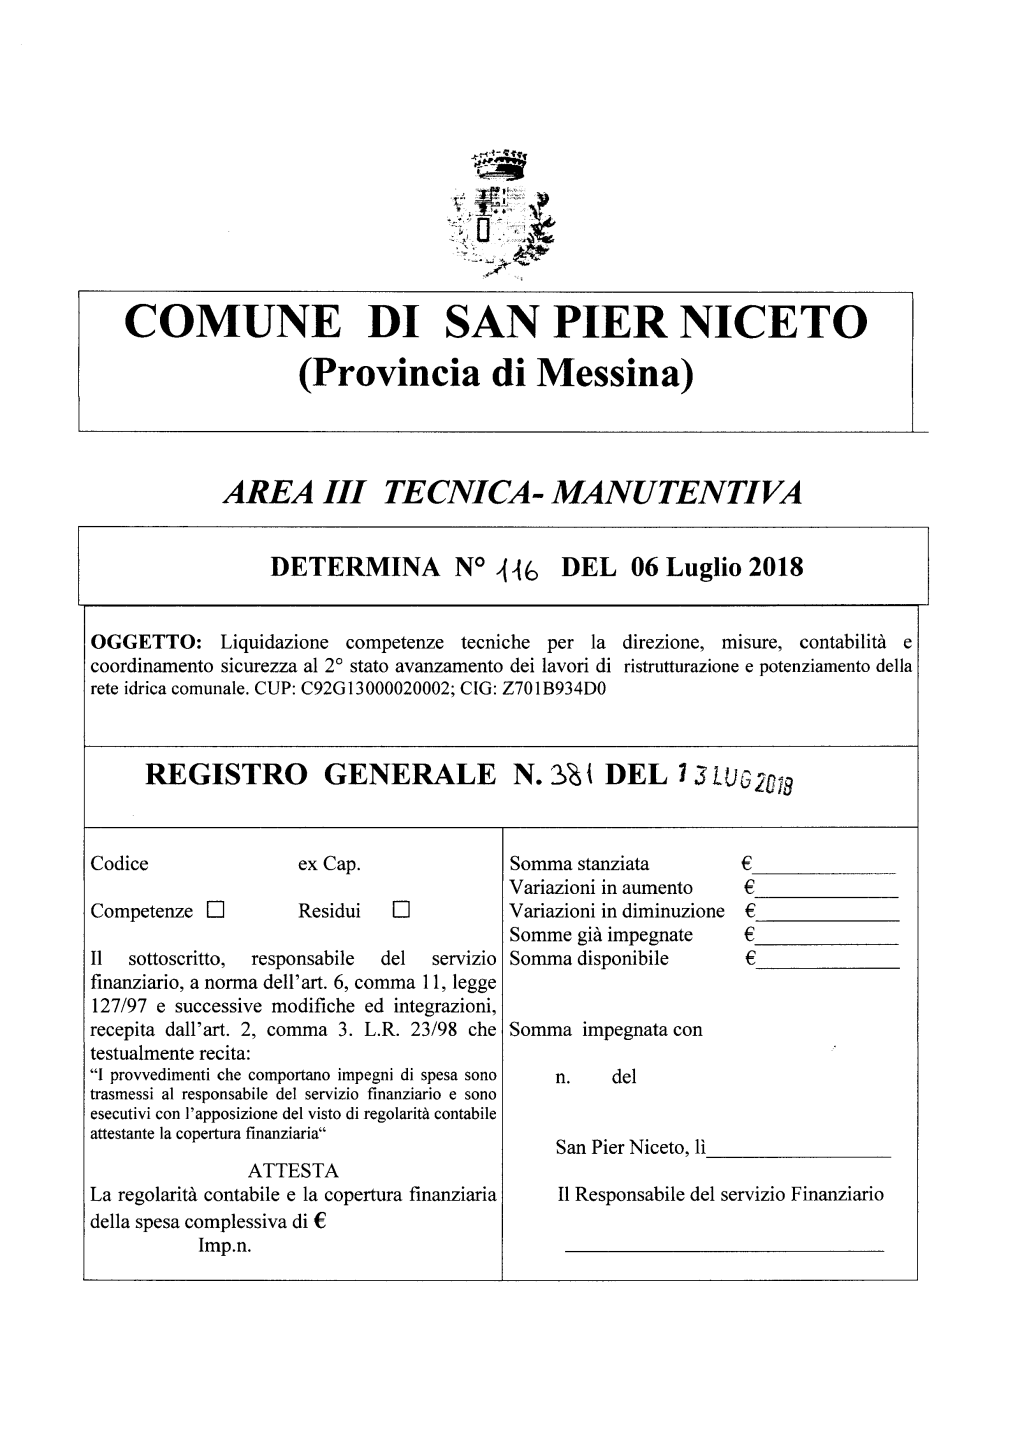 COMUNE DI SAN PIER NICETO (Provincia Di Messina)